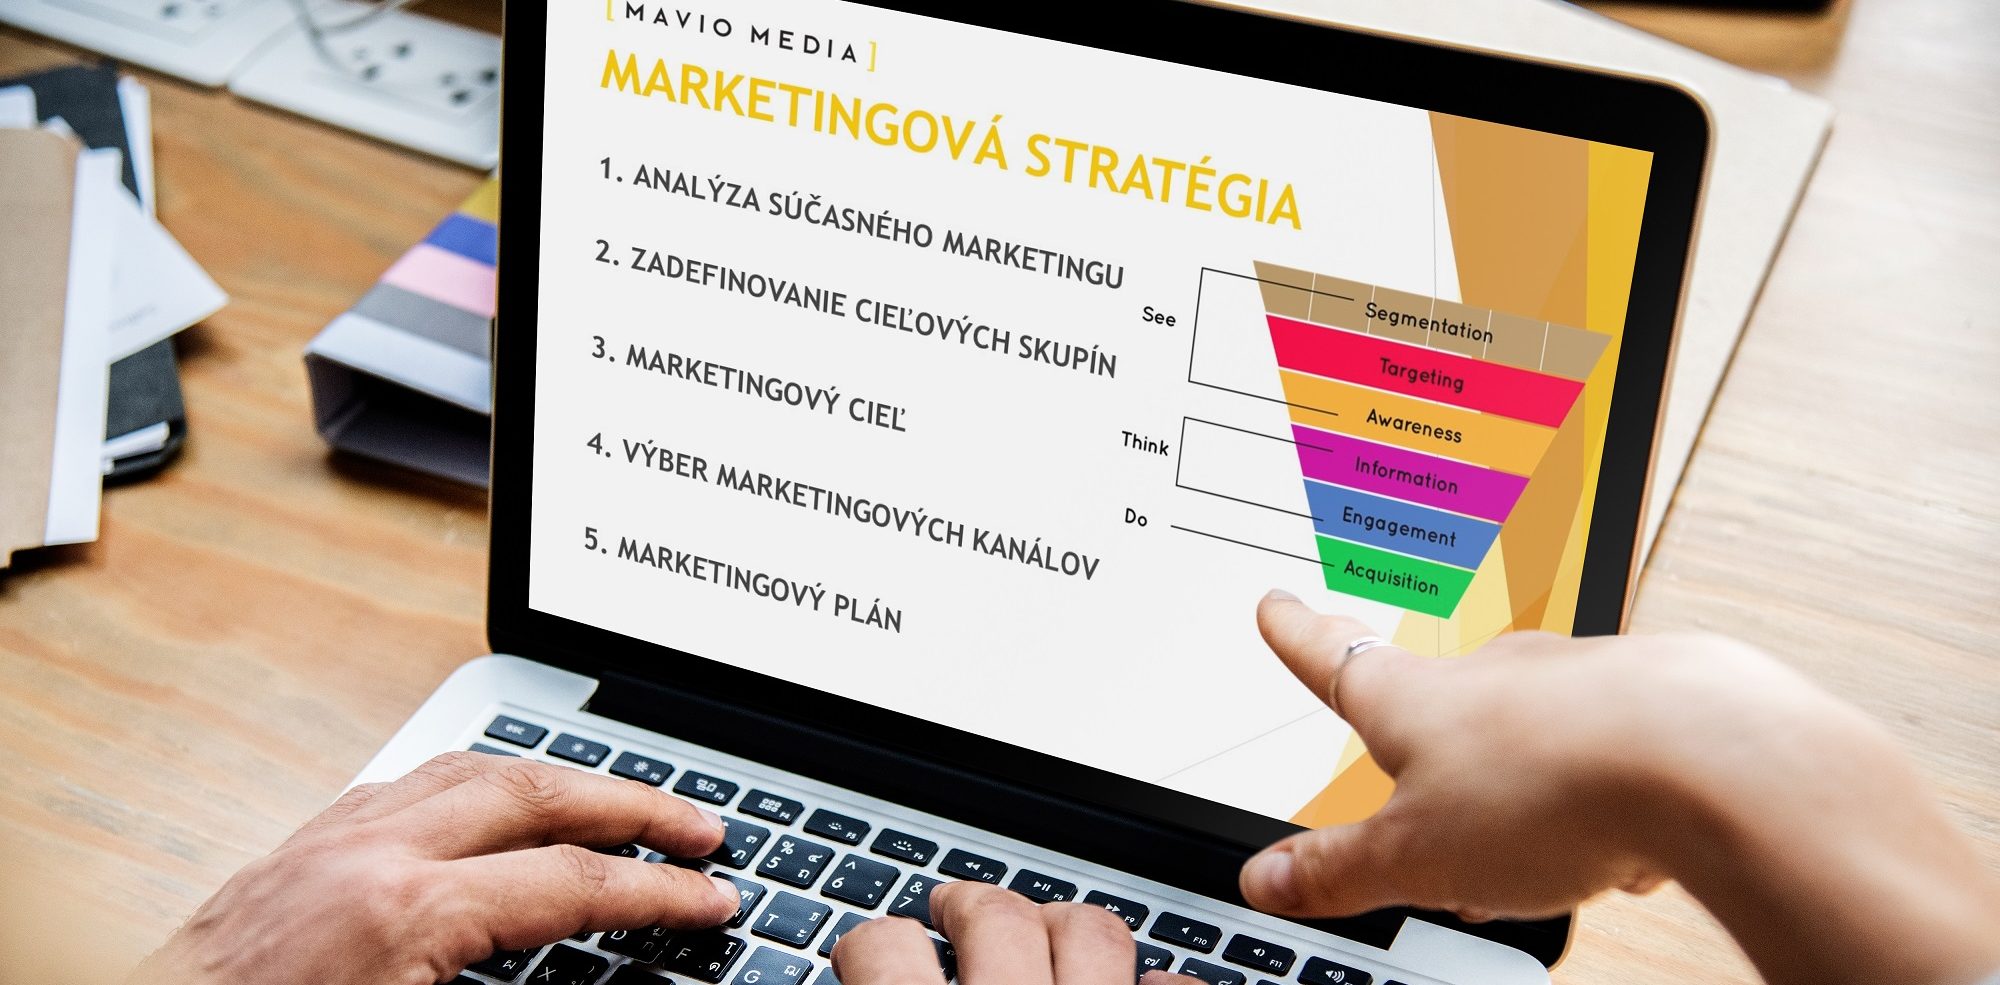 Ako sa tvorí úspešná marketingová stratégia? (case study) | Jaroslav Dodok  - osobný blog, školenia a projekty